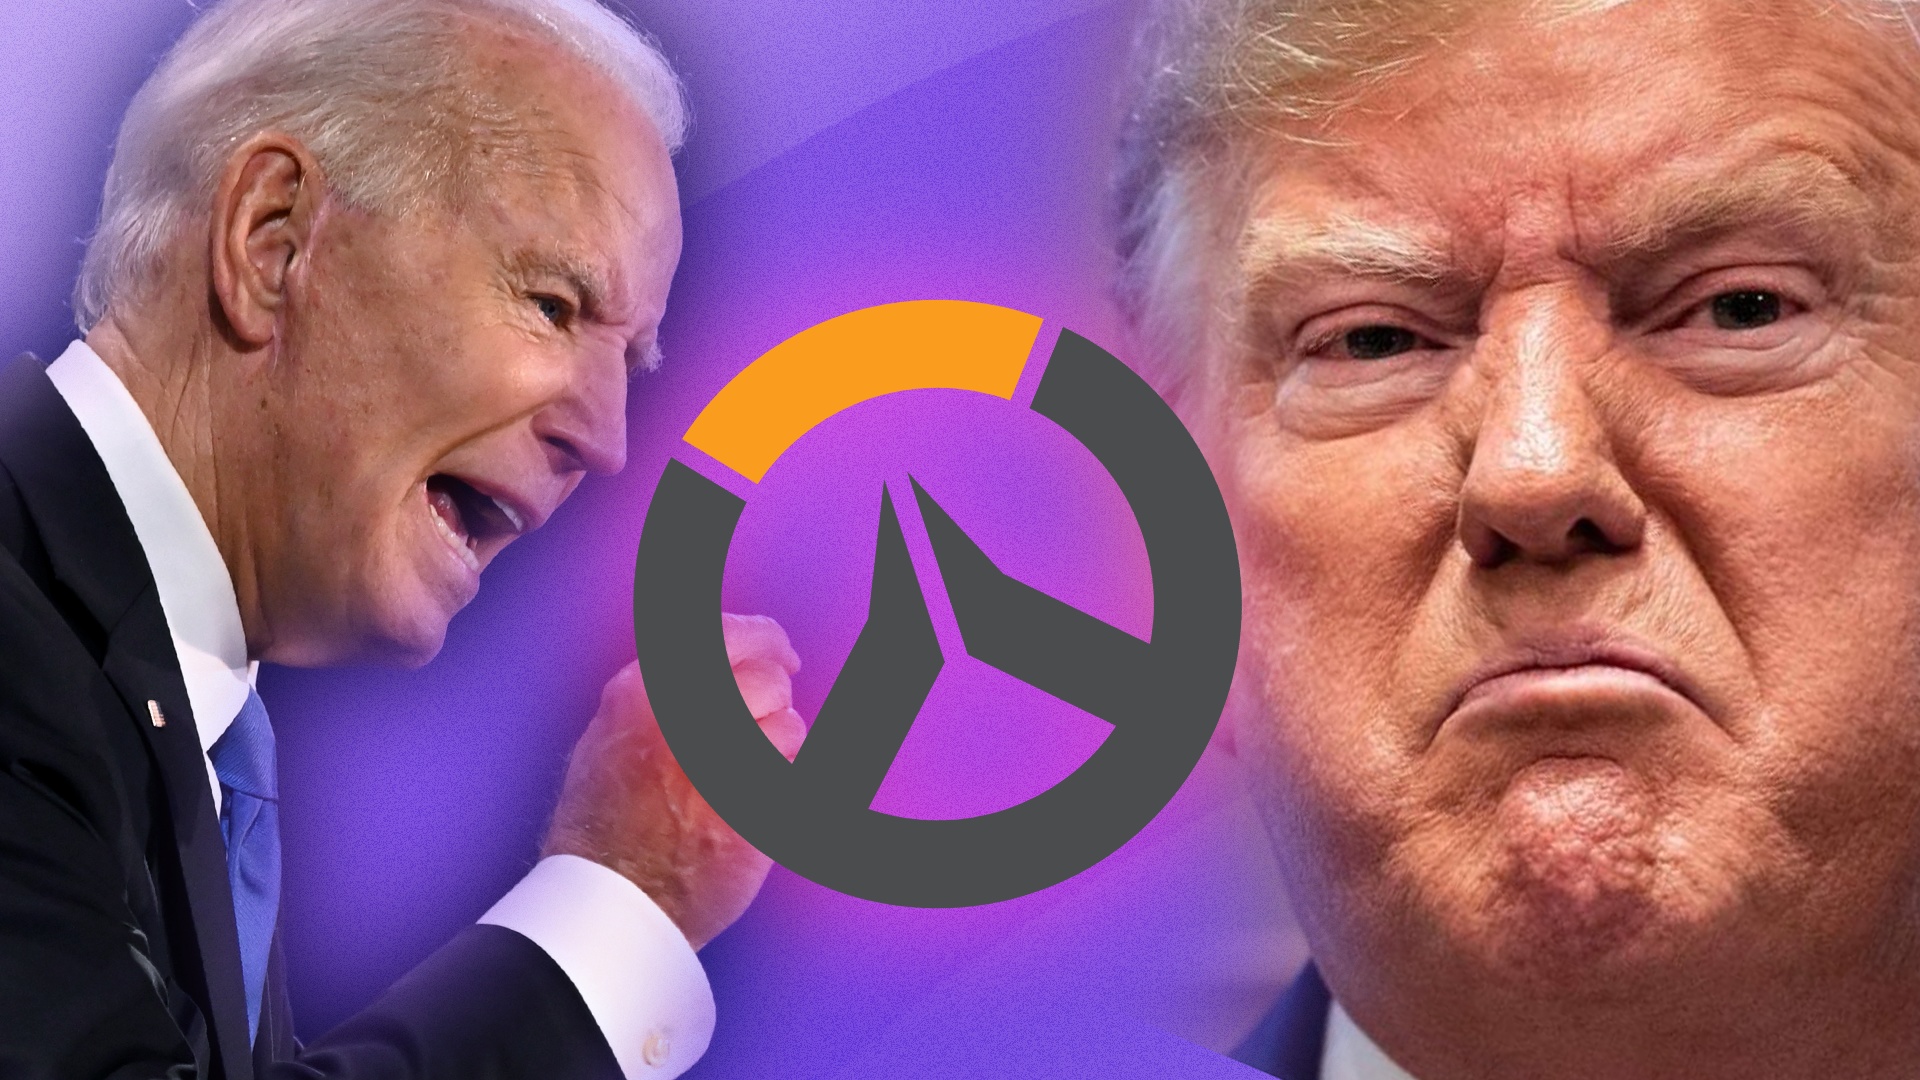 Donald Trump und Joe Biden duellieren sich in Overwatch - KI macht’s möglich